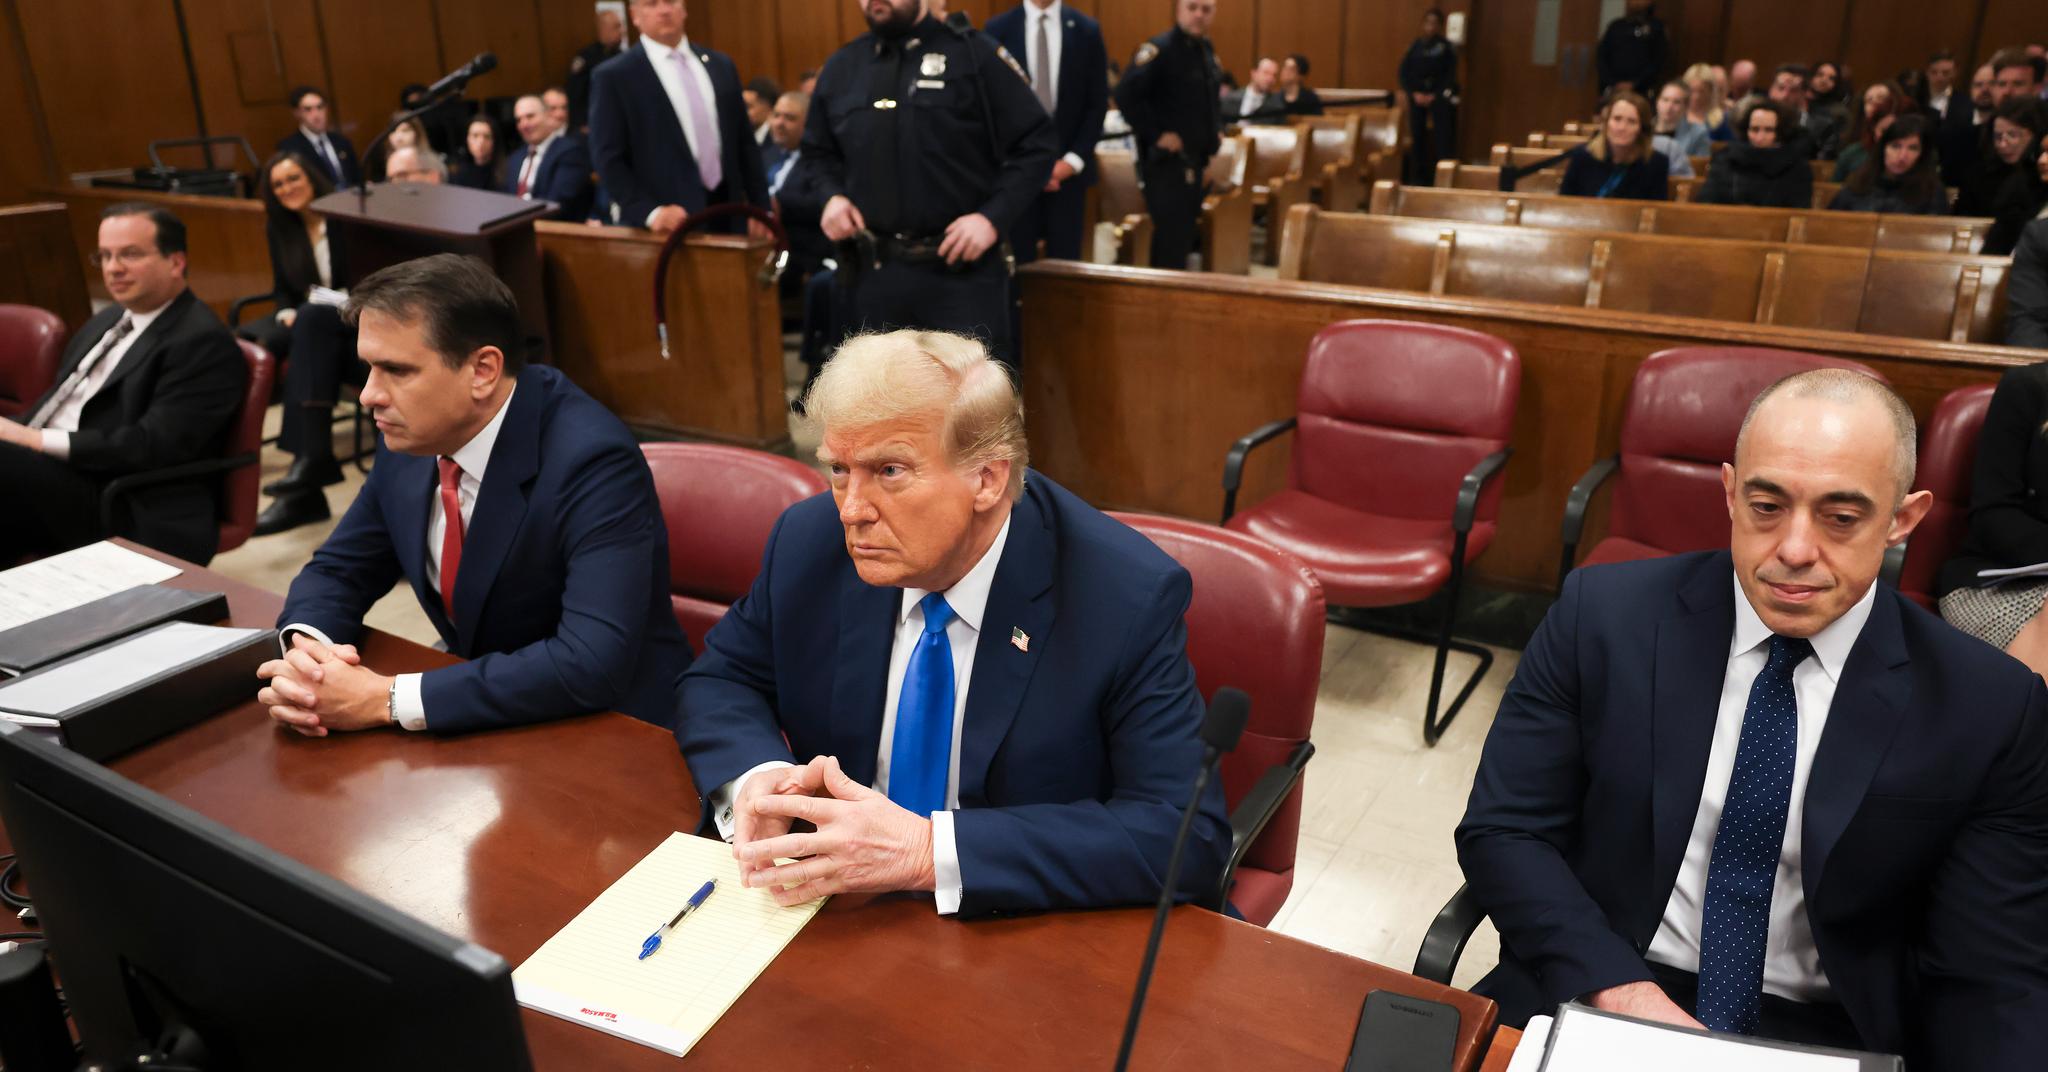 Donald Trump sitter her i retten mellom sine forsvarere, Todd Blanche og Emil Bove.